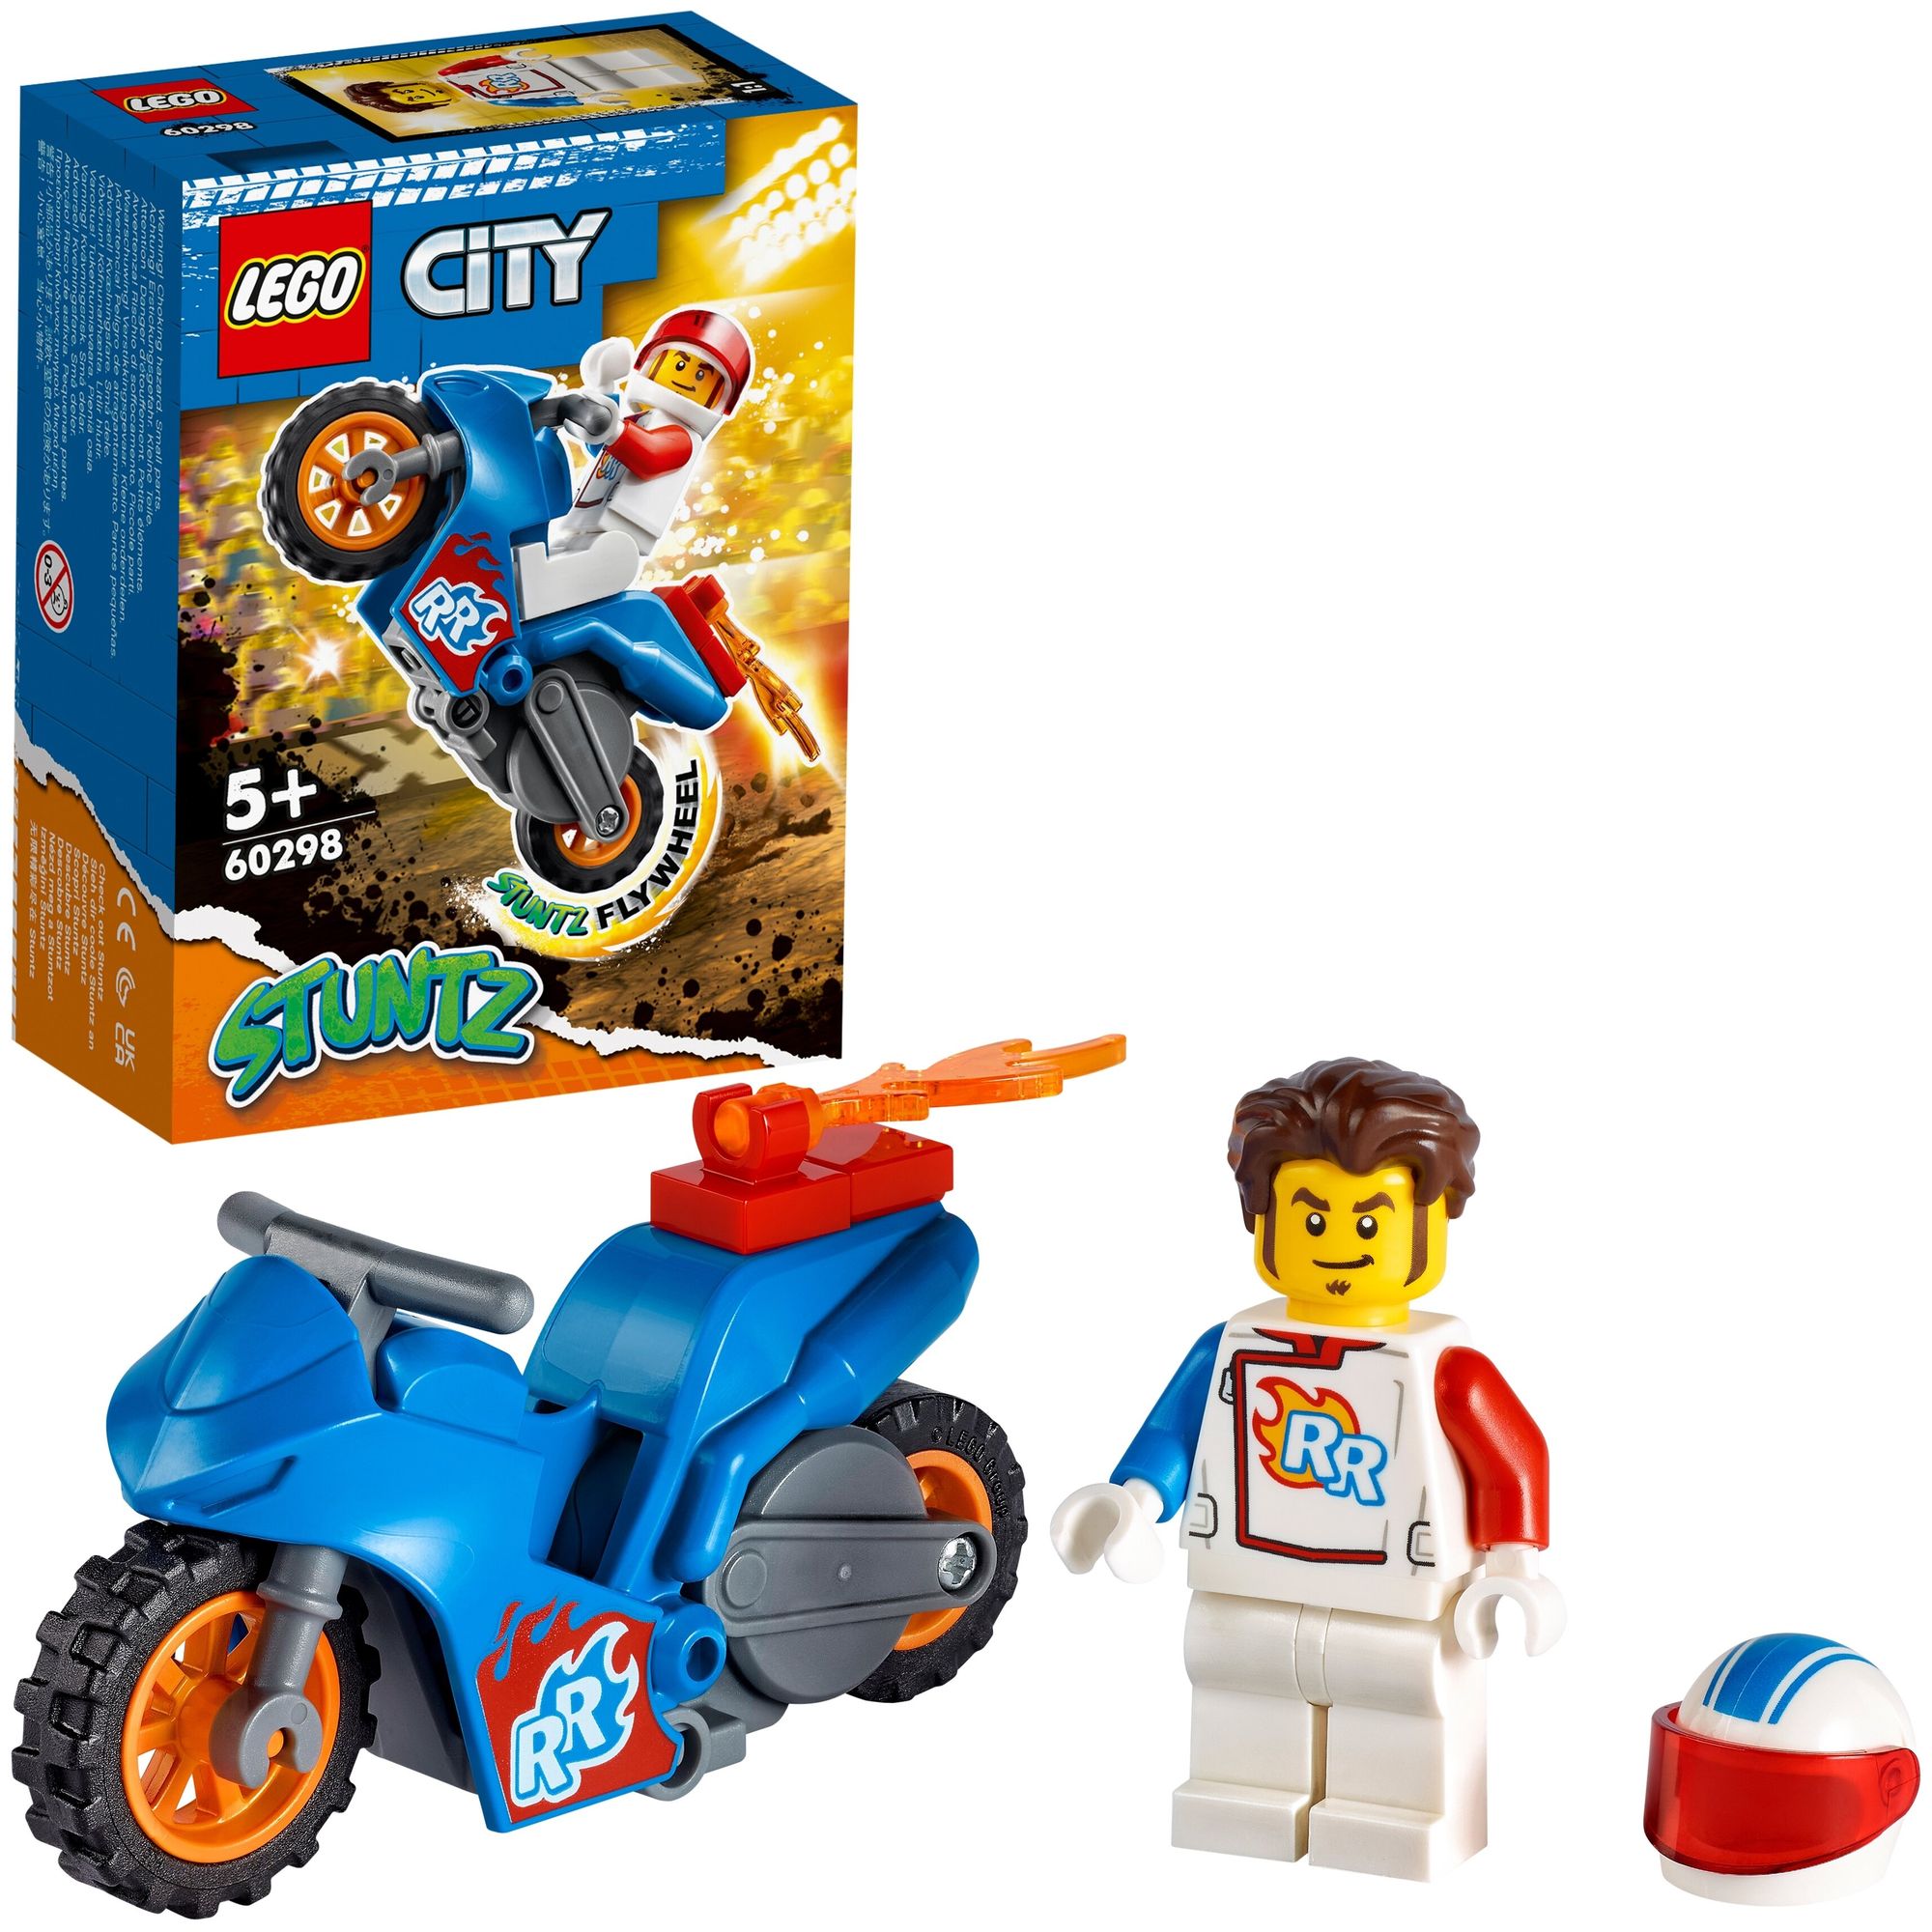 конструктор lego city 60356 bear stunt bike 10 дет Конструктор LEGO 60298 City Rocket Stunt Bike (Реактивный трюковый мотоцикл)